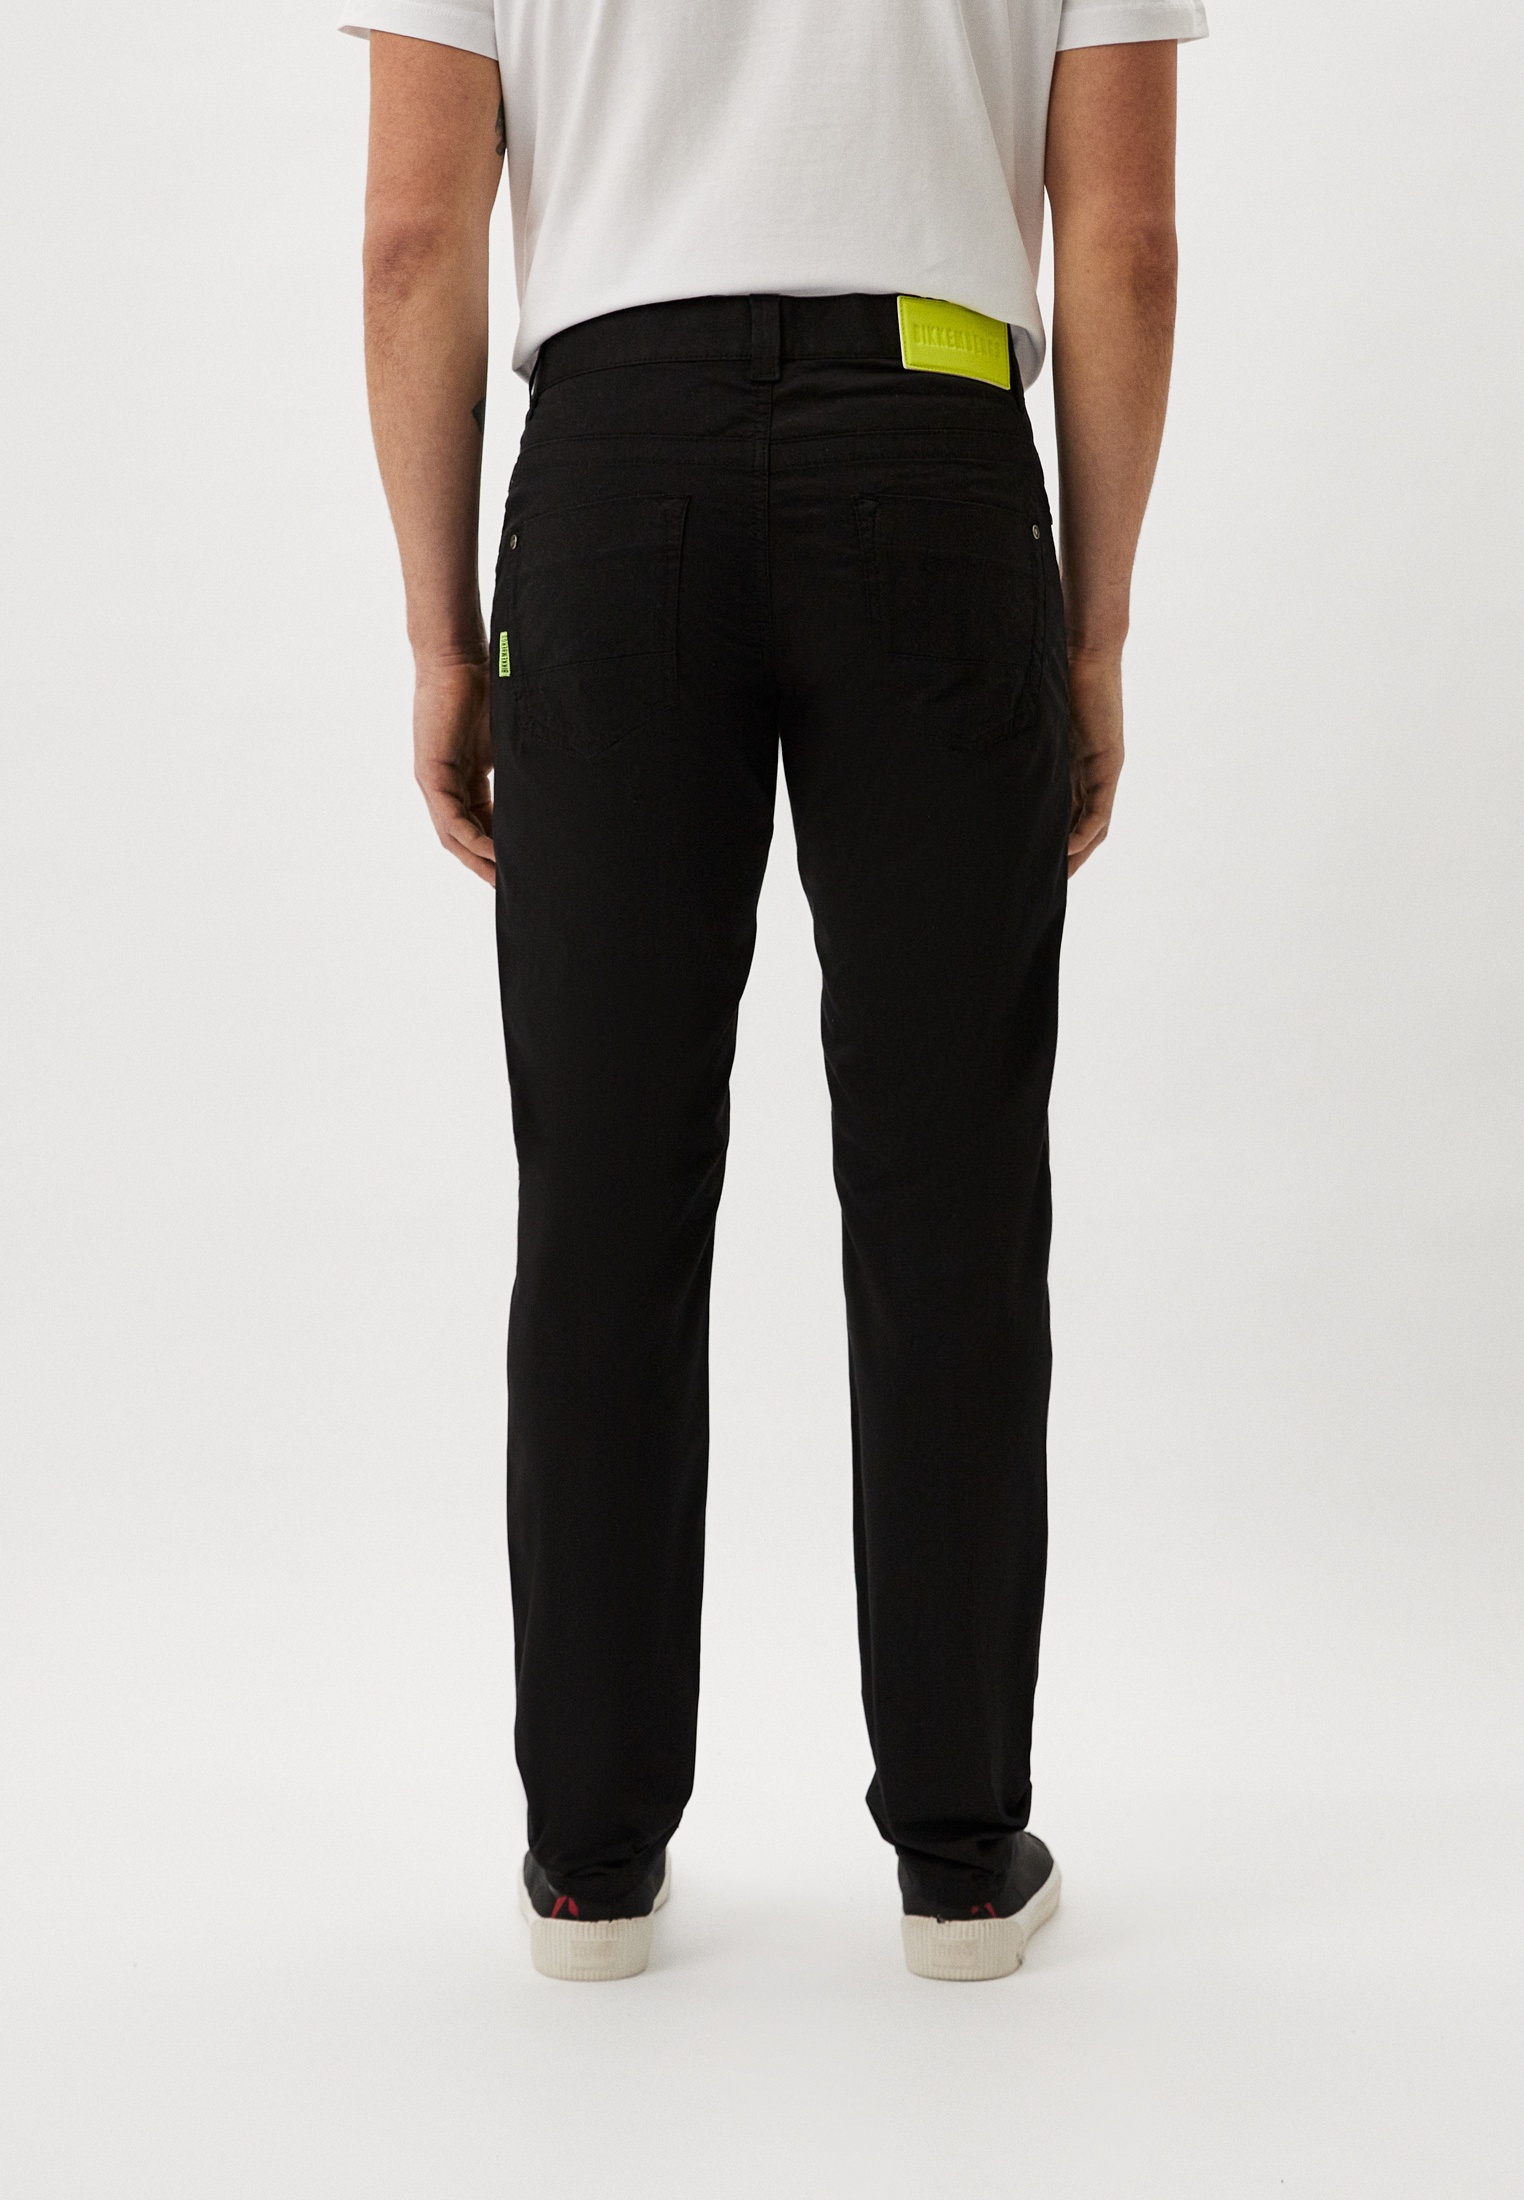 Мужские повседневные брюки Bikkembergs (Биккембергс) CQ10124S3519: изображение 7